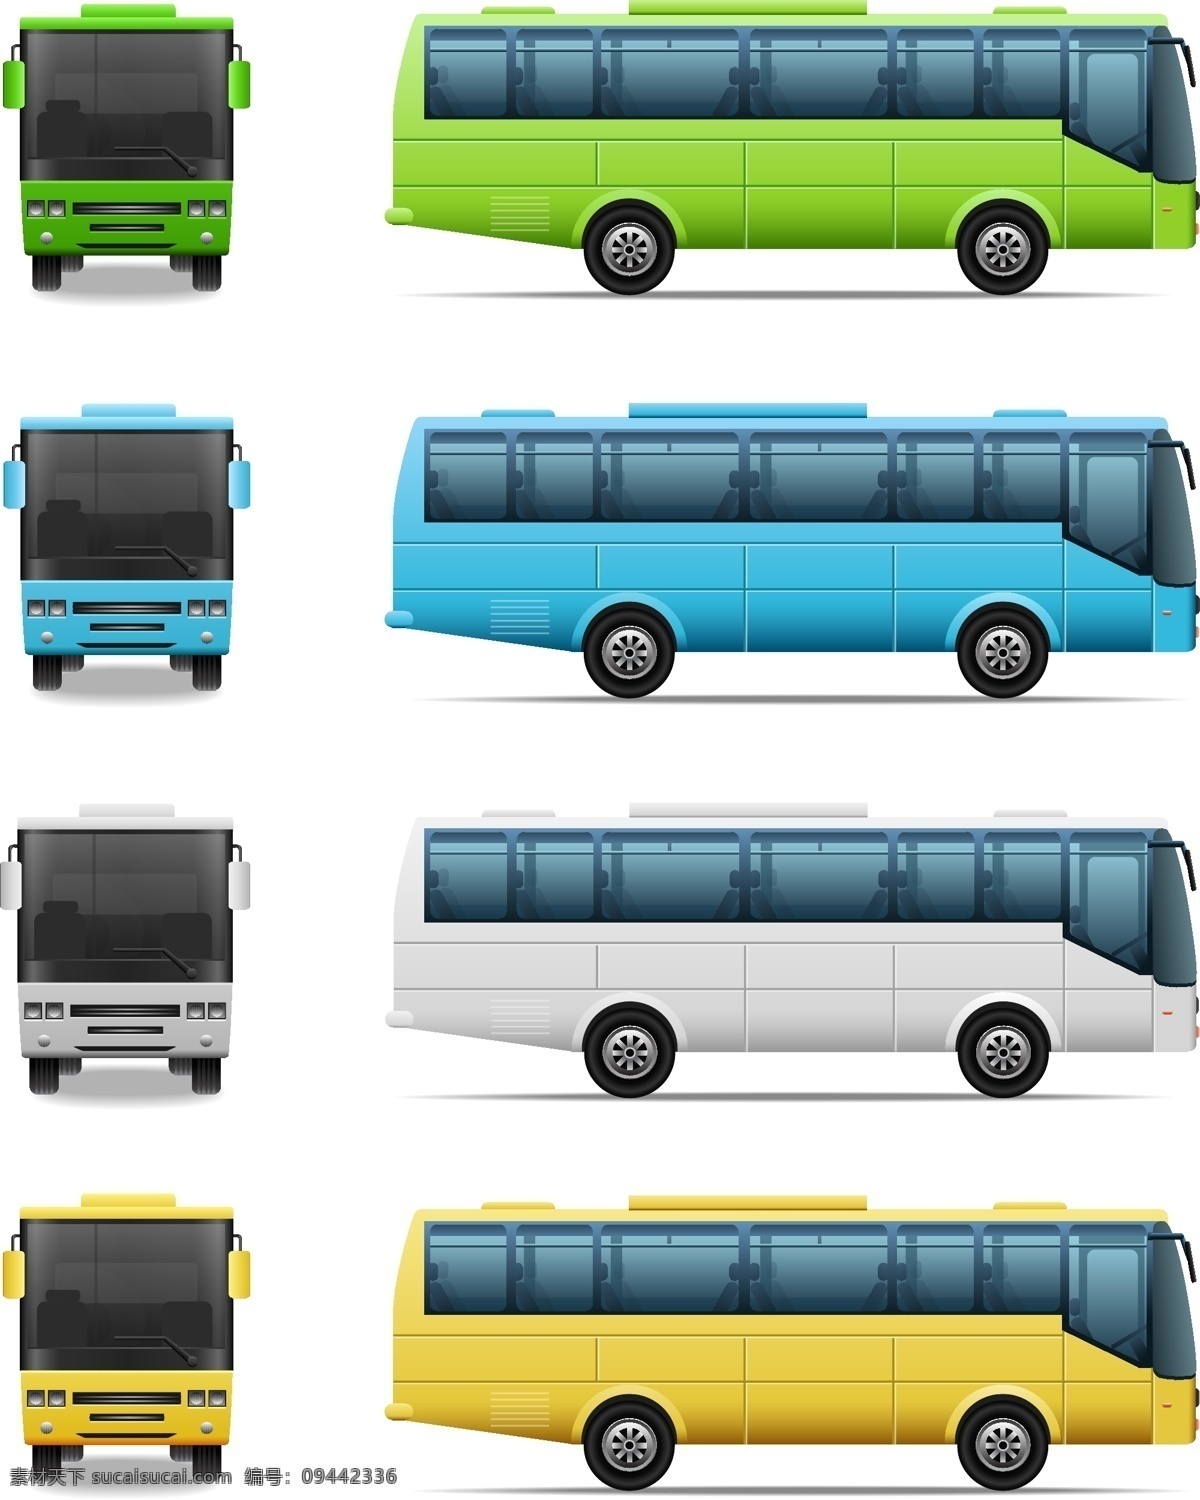 公交车 巴士 城际公交 汽车 现代科技 交通工具 矢量